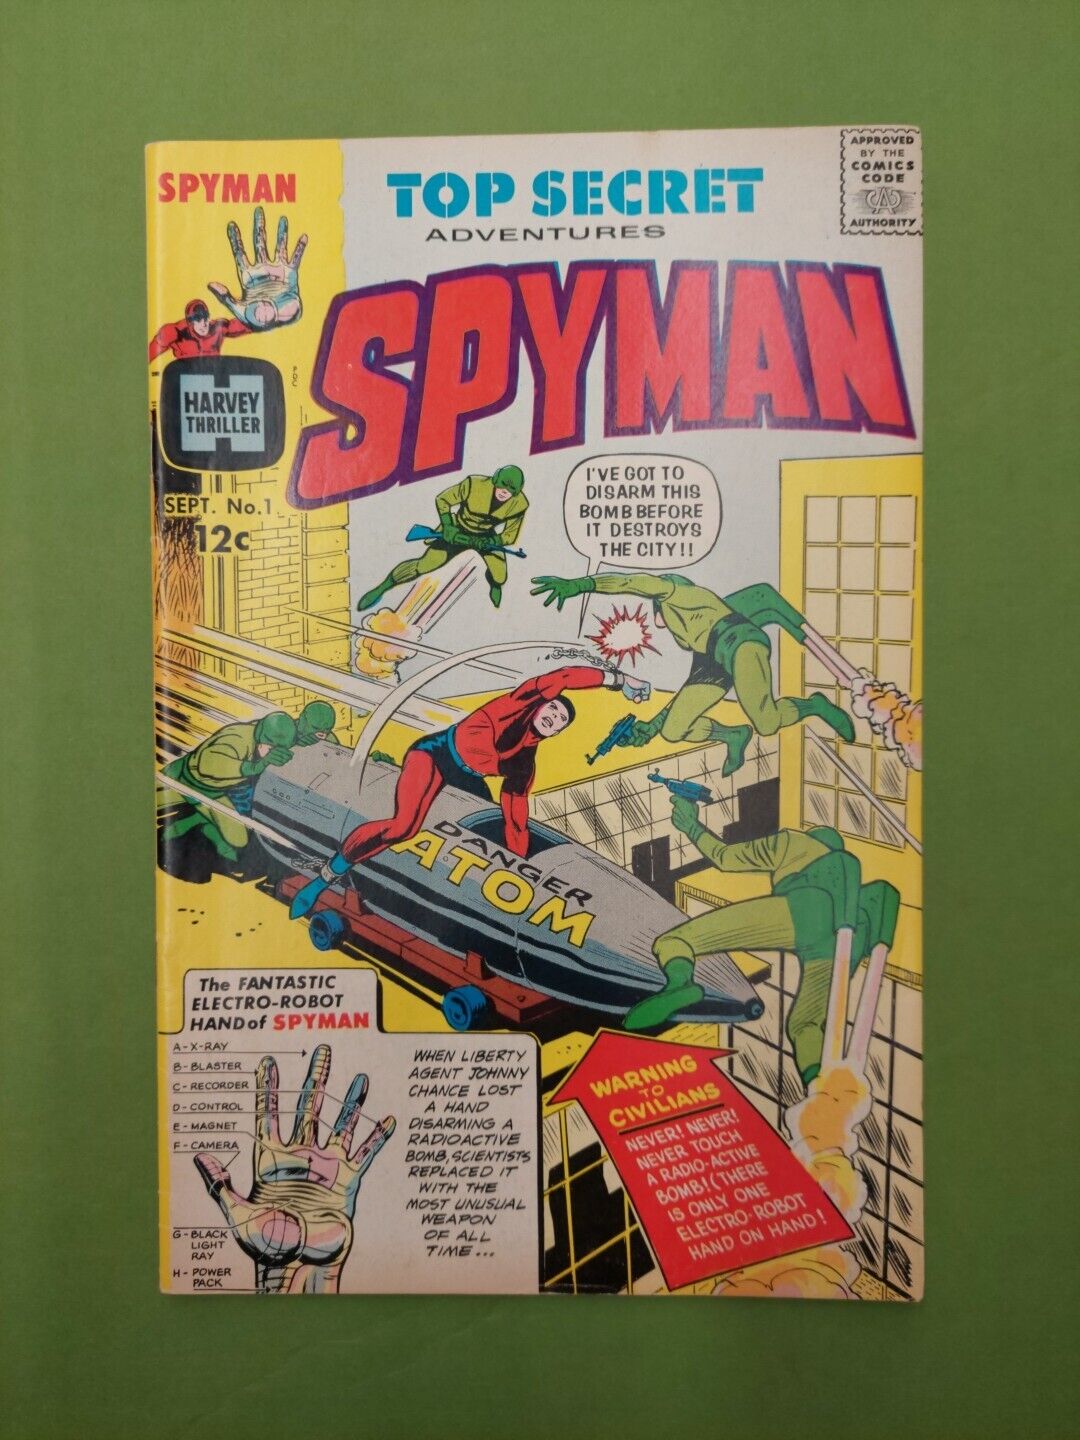 Top Secret Adventures Spyman #1  1966   1st Steranko art/early Neal Adams  (F427